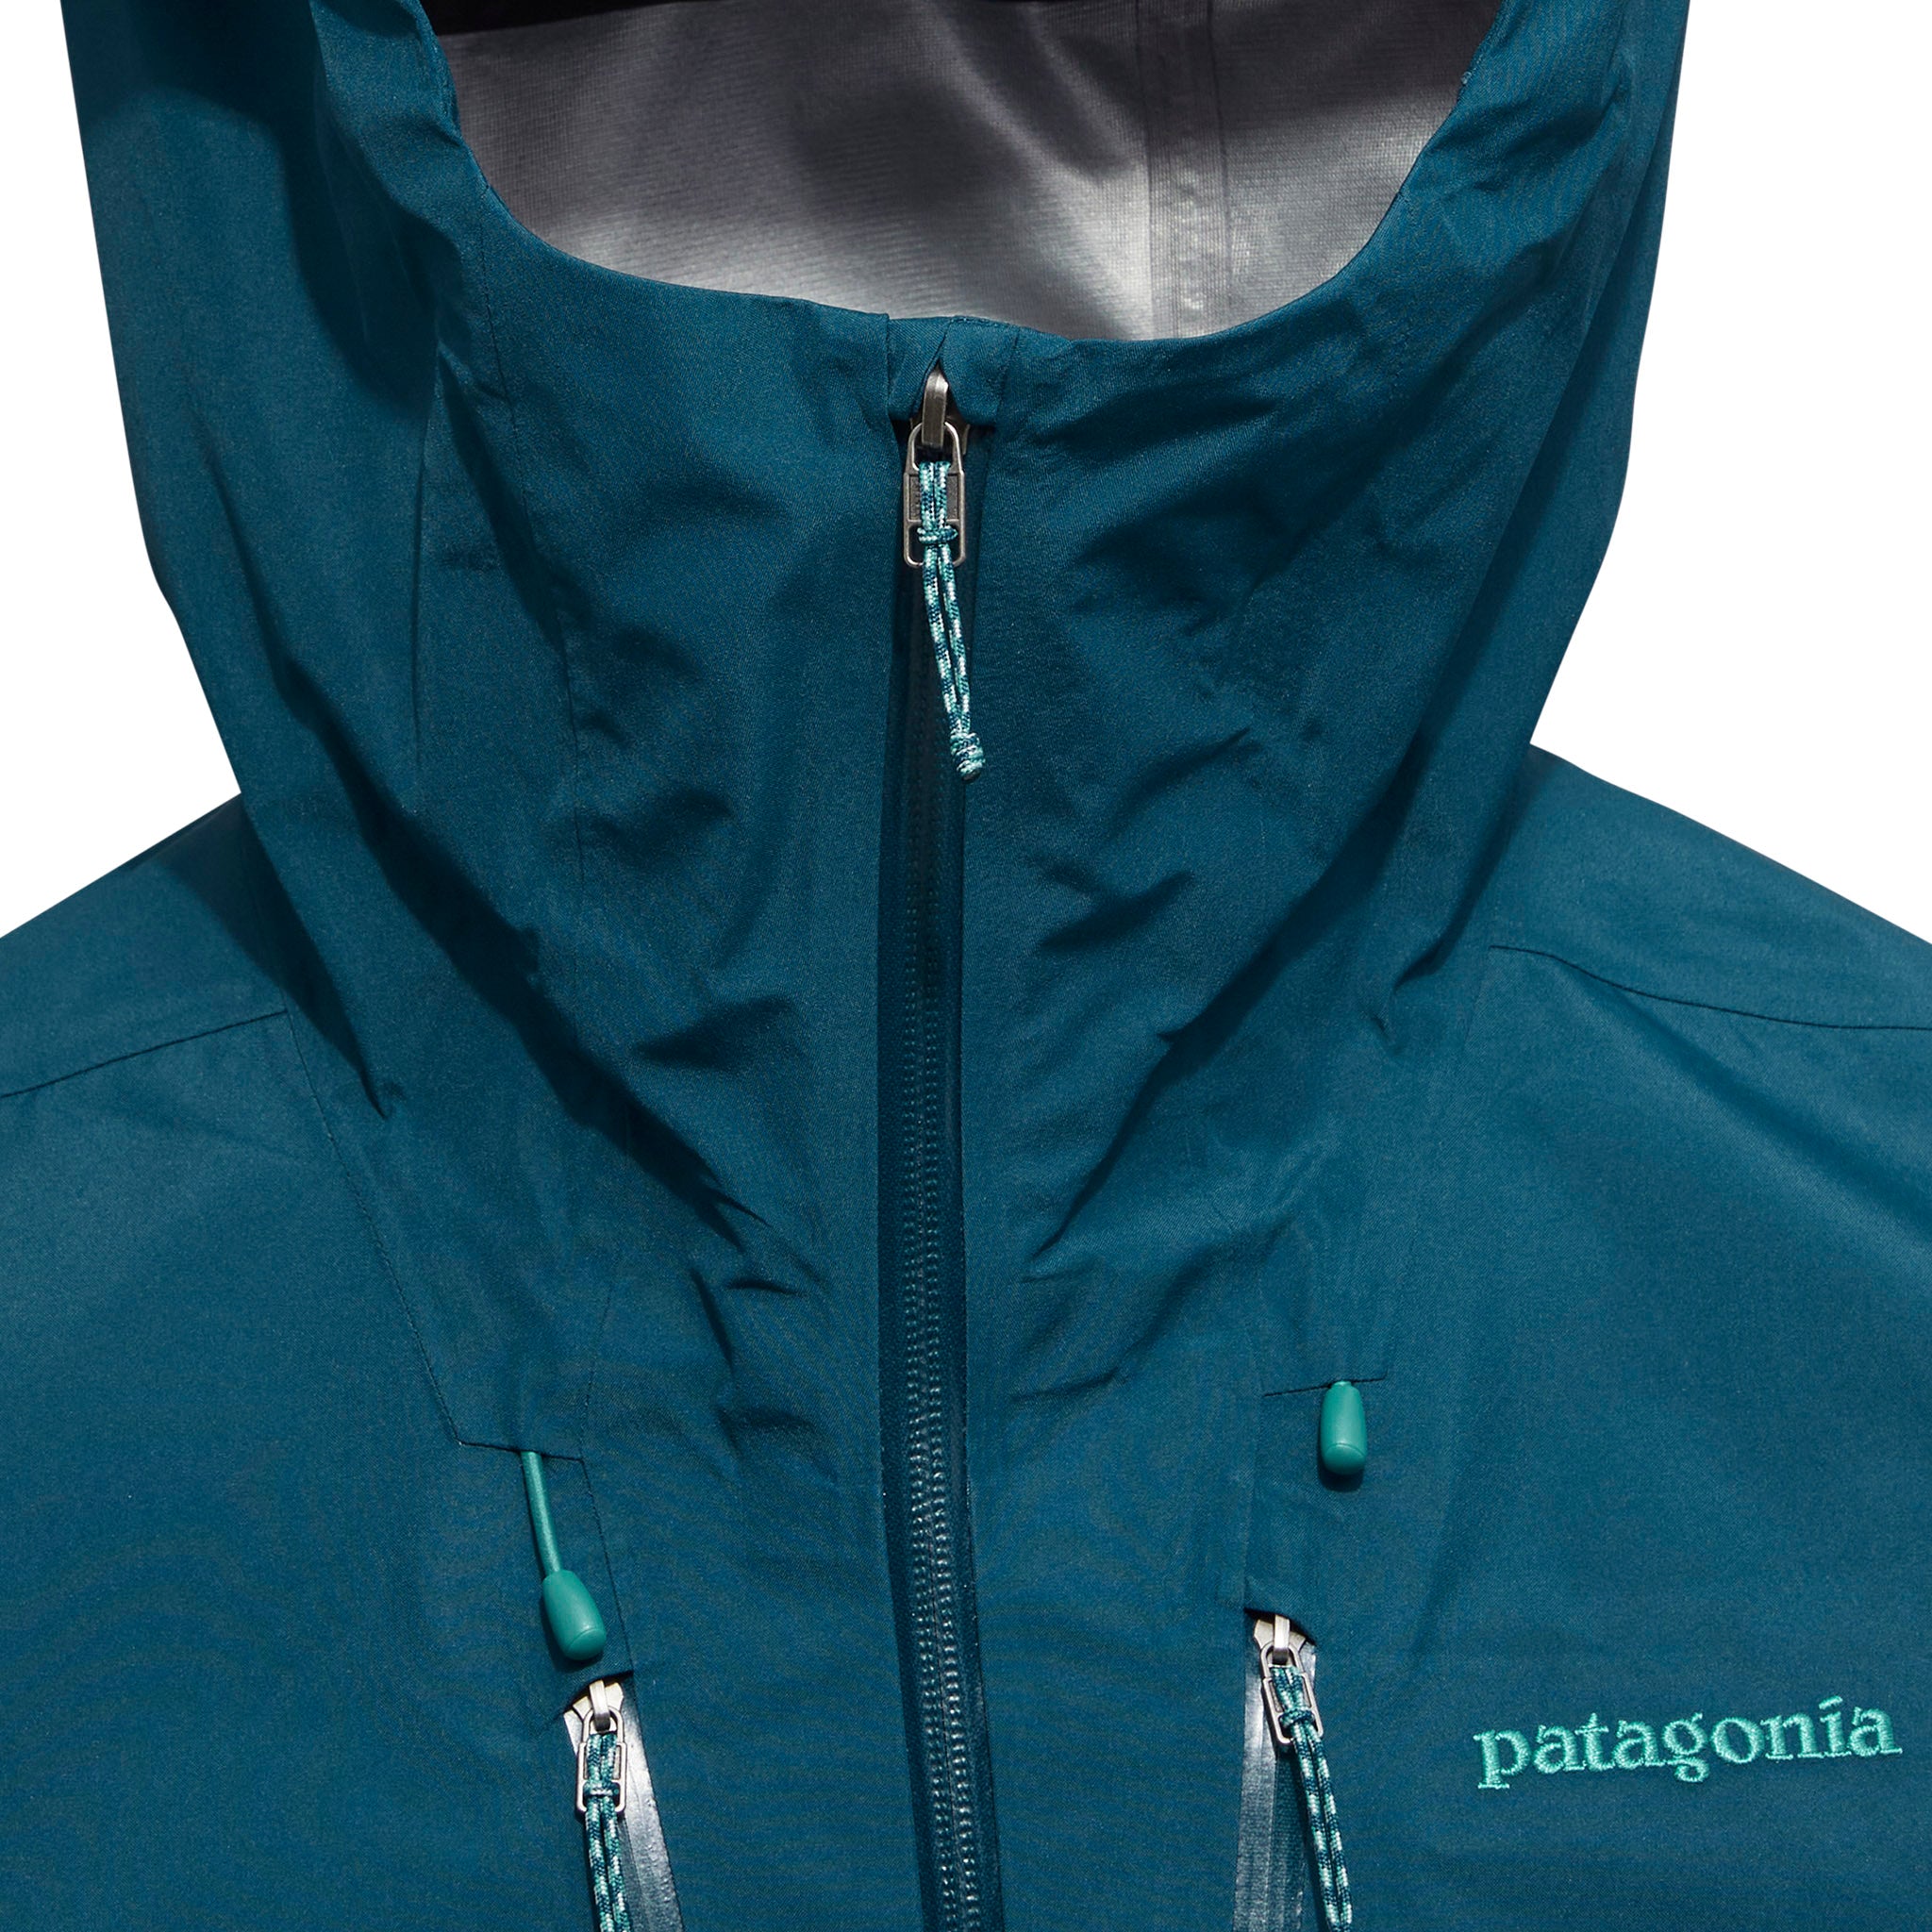 Patagonia Triolet Jacket (Black) - Consortium.